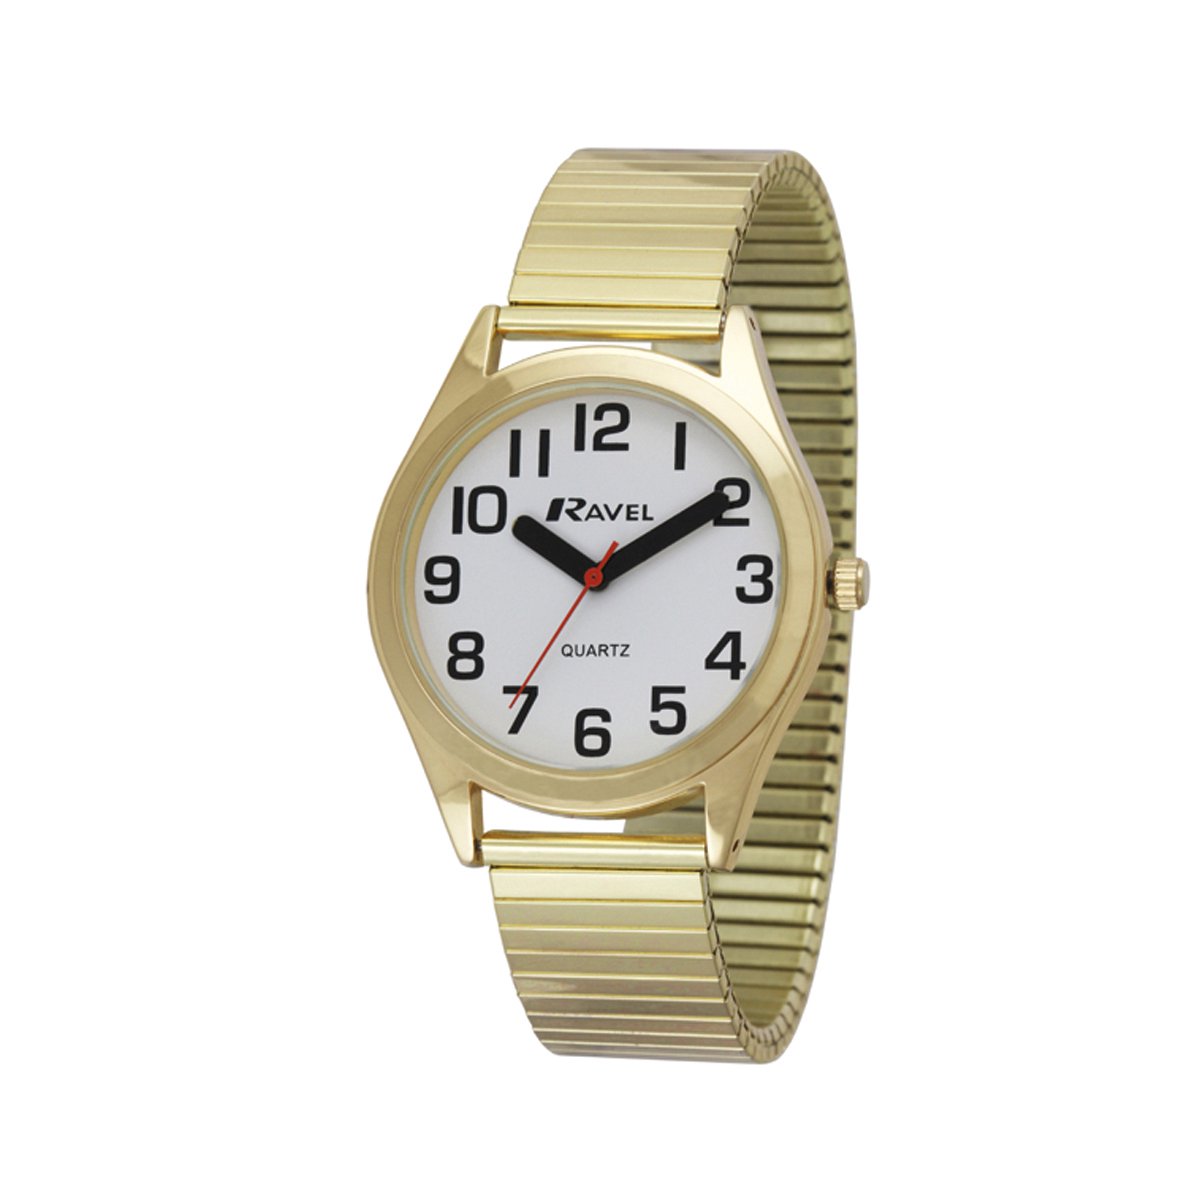 Ravel - heren super gewaagd zicht hulp roestvrij staal expander armband horloge met grote getallen en handen (36mm horlogekast) - Analoge Kwarts - R0225.02.1 - goudkleurig / witte wijzerplaat